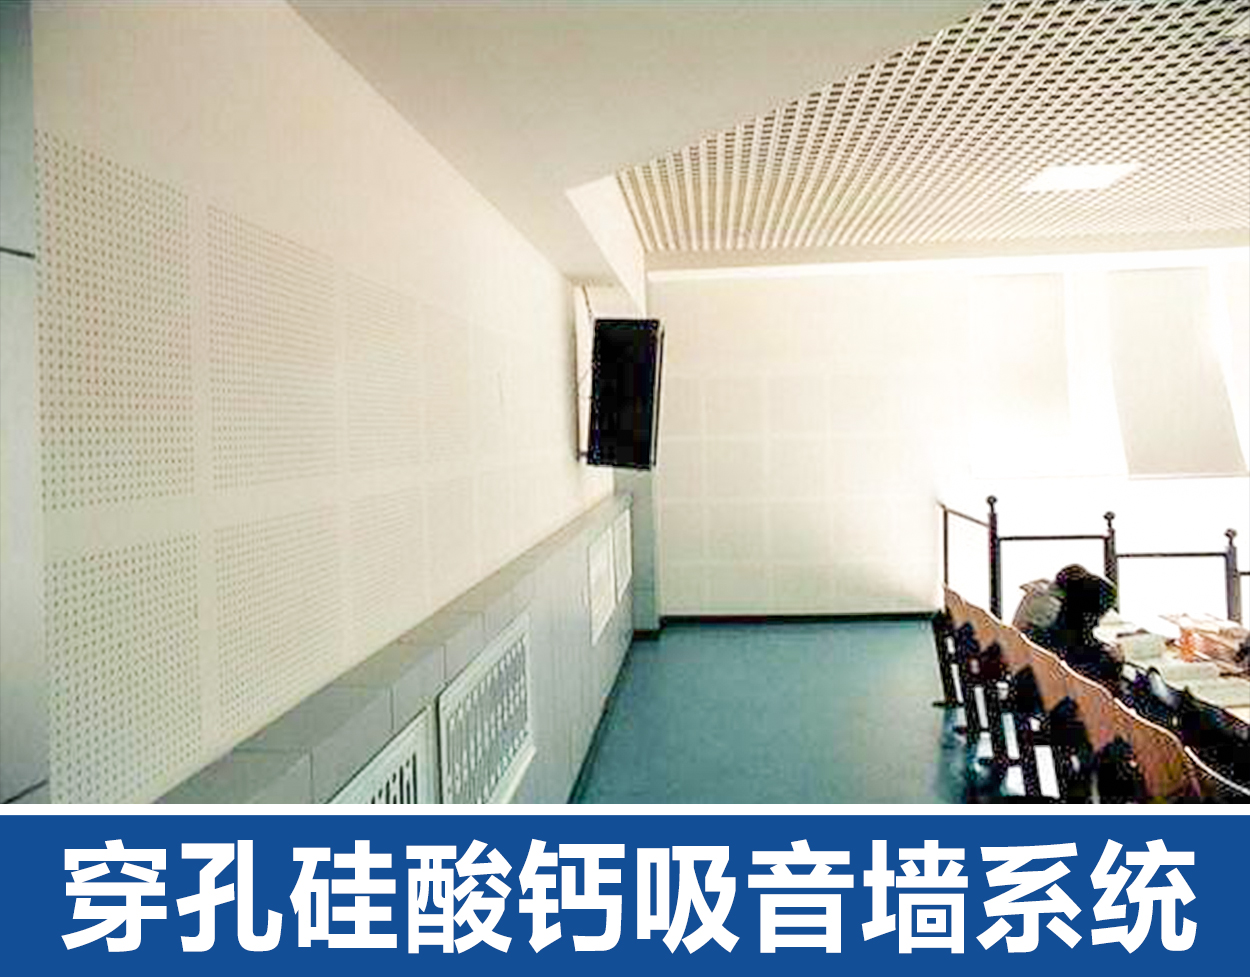 郑州穿孔硅酸钙吸音墙系统